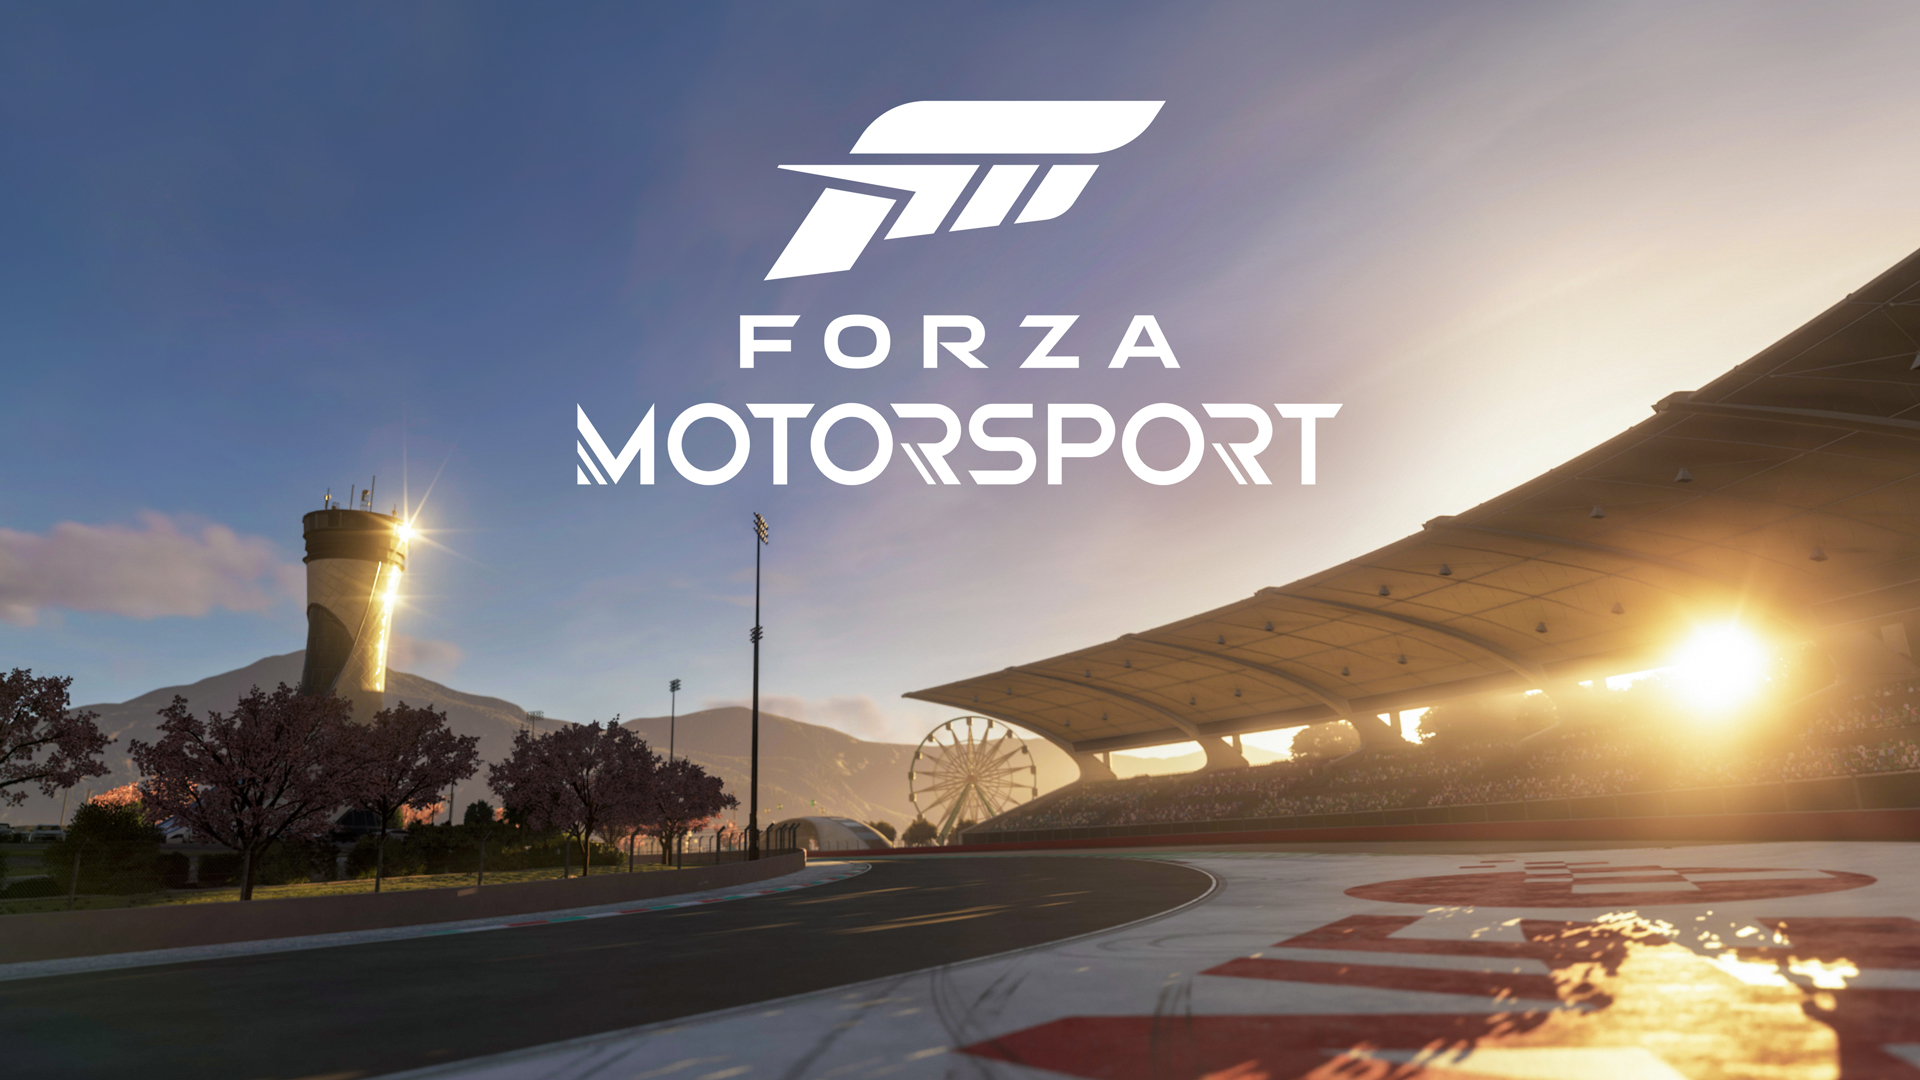 ビデオの対象『Forza Motorsport』は高度な技術を駆使した新生レーシングゲーム